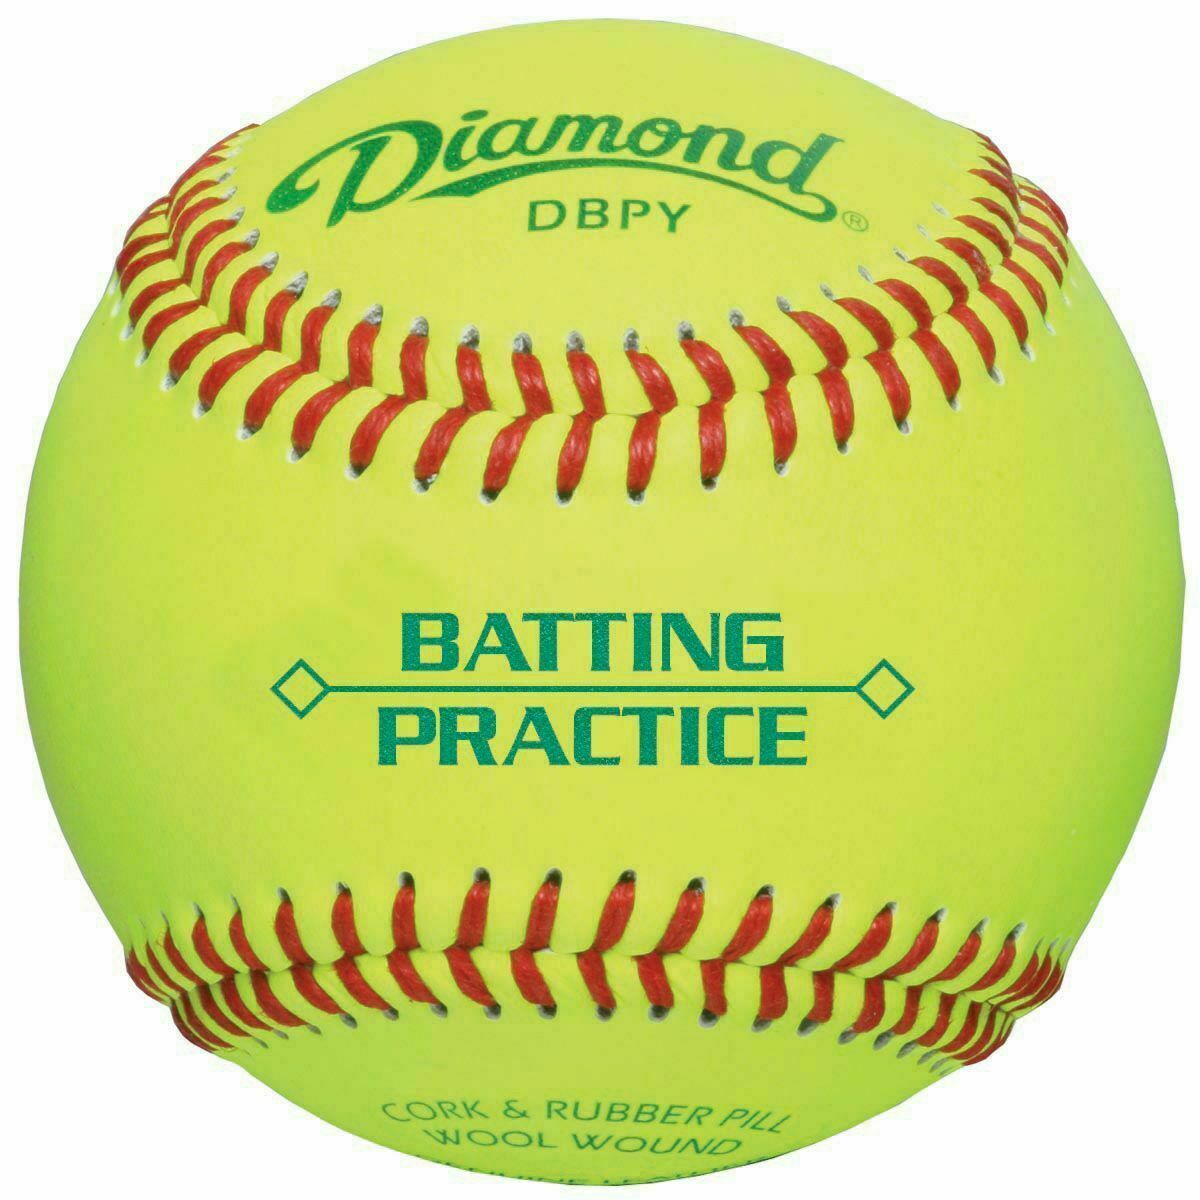 Deportes Diamante | DBPY | Pelotas de béisbol amarillas para prácticas de bateo | 1 docena de bolas